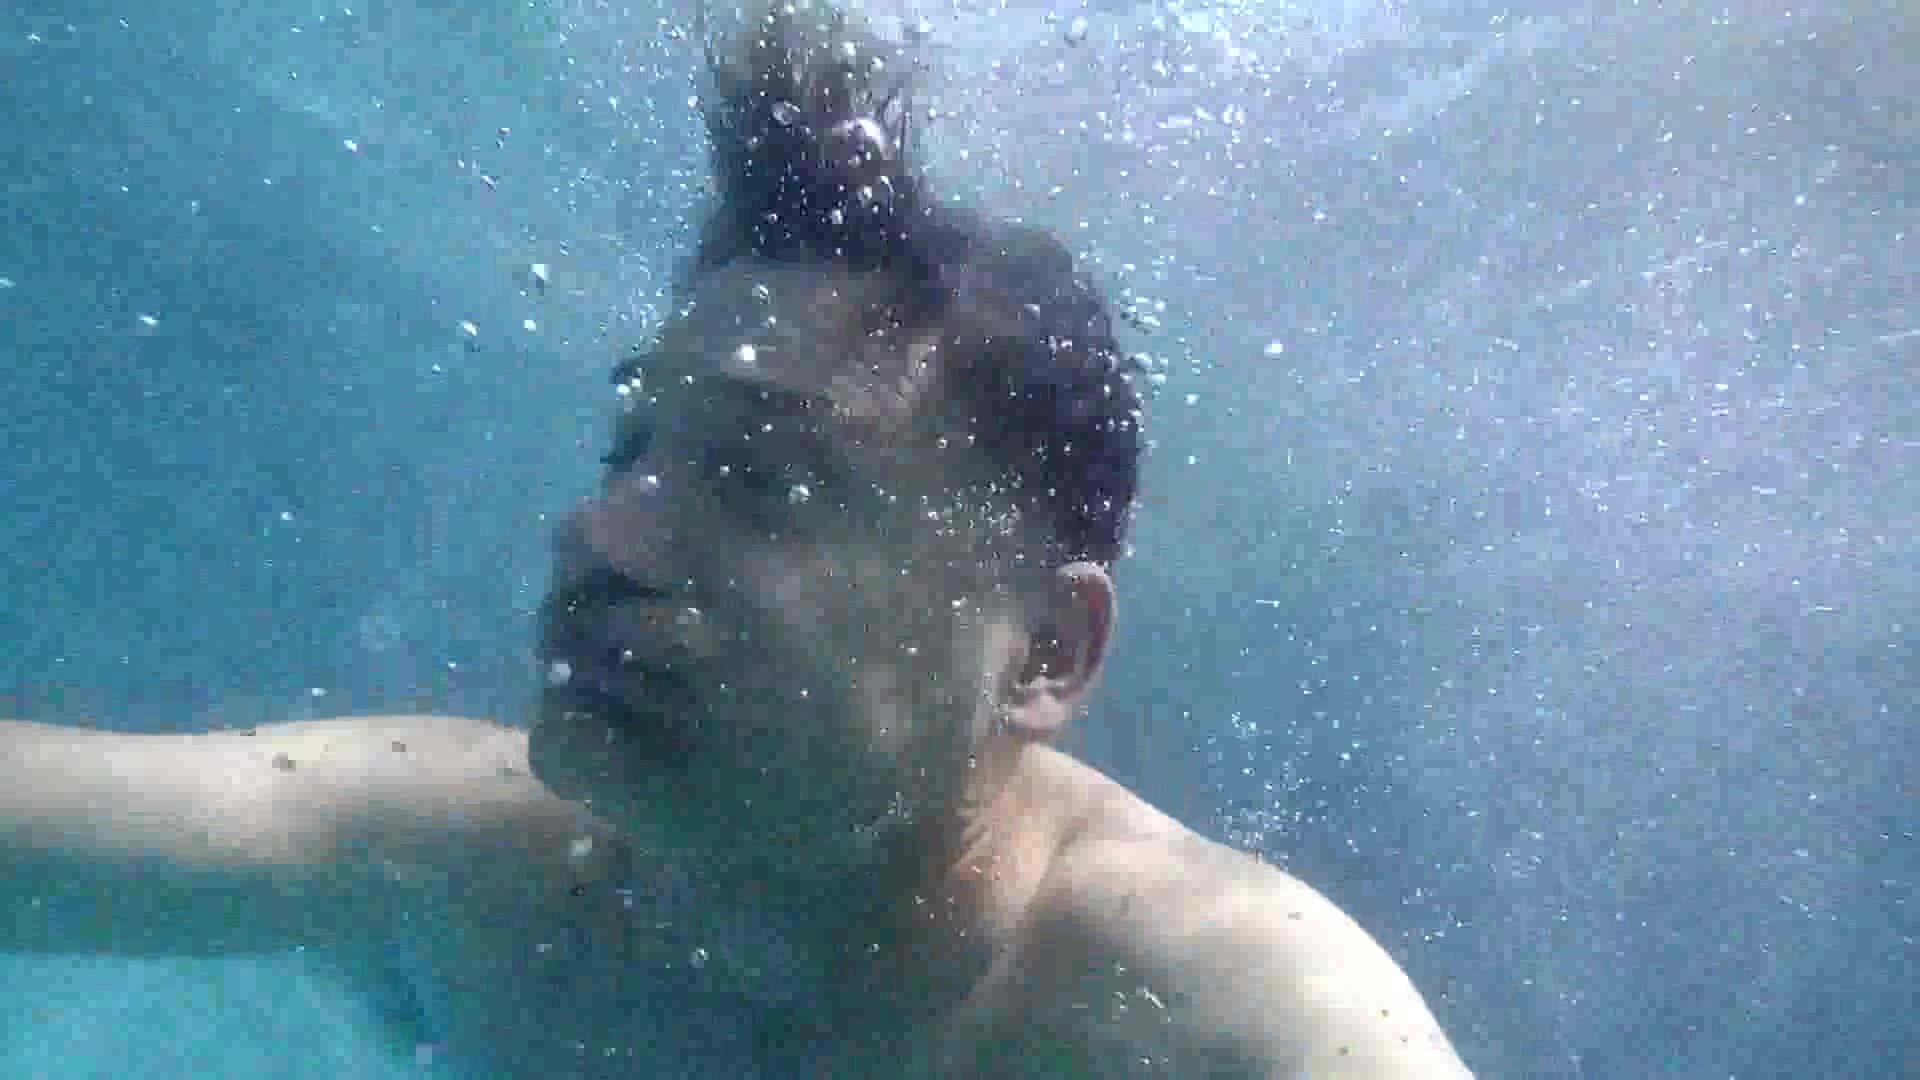 Barefaced mature man underwater